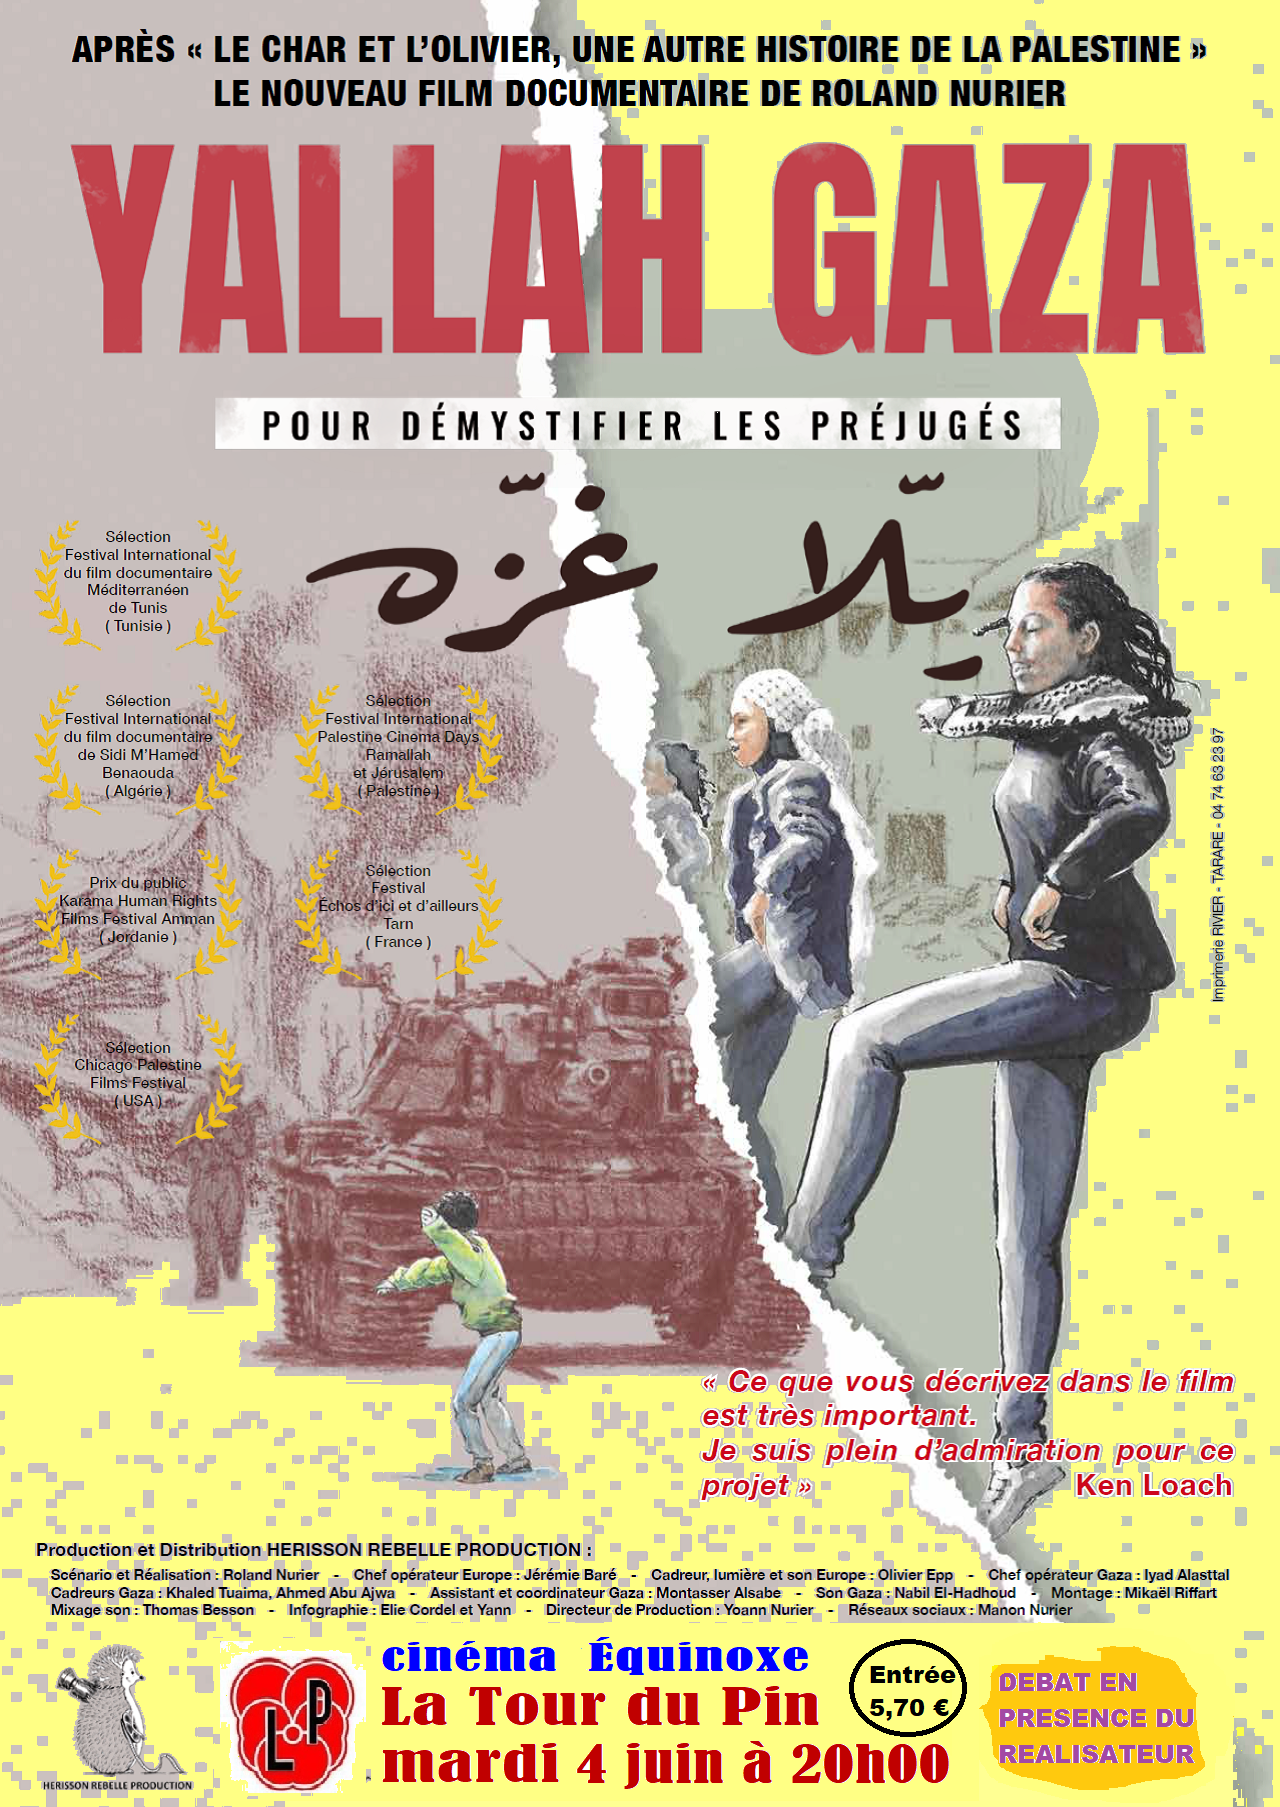 projection du film documentaire "YALLAH GAZA", puis débat avec le réalisateur